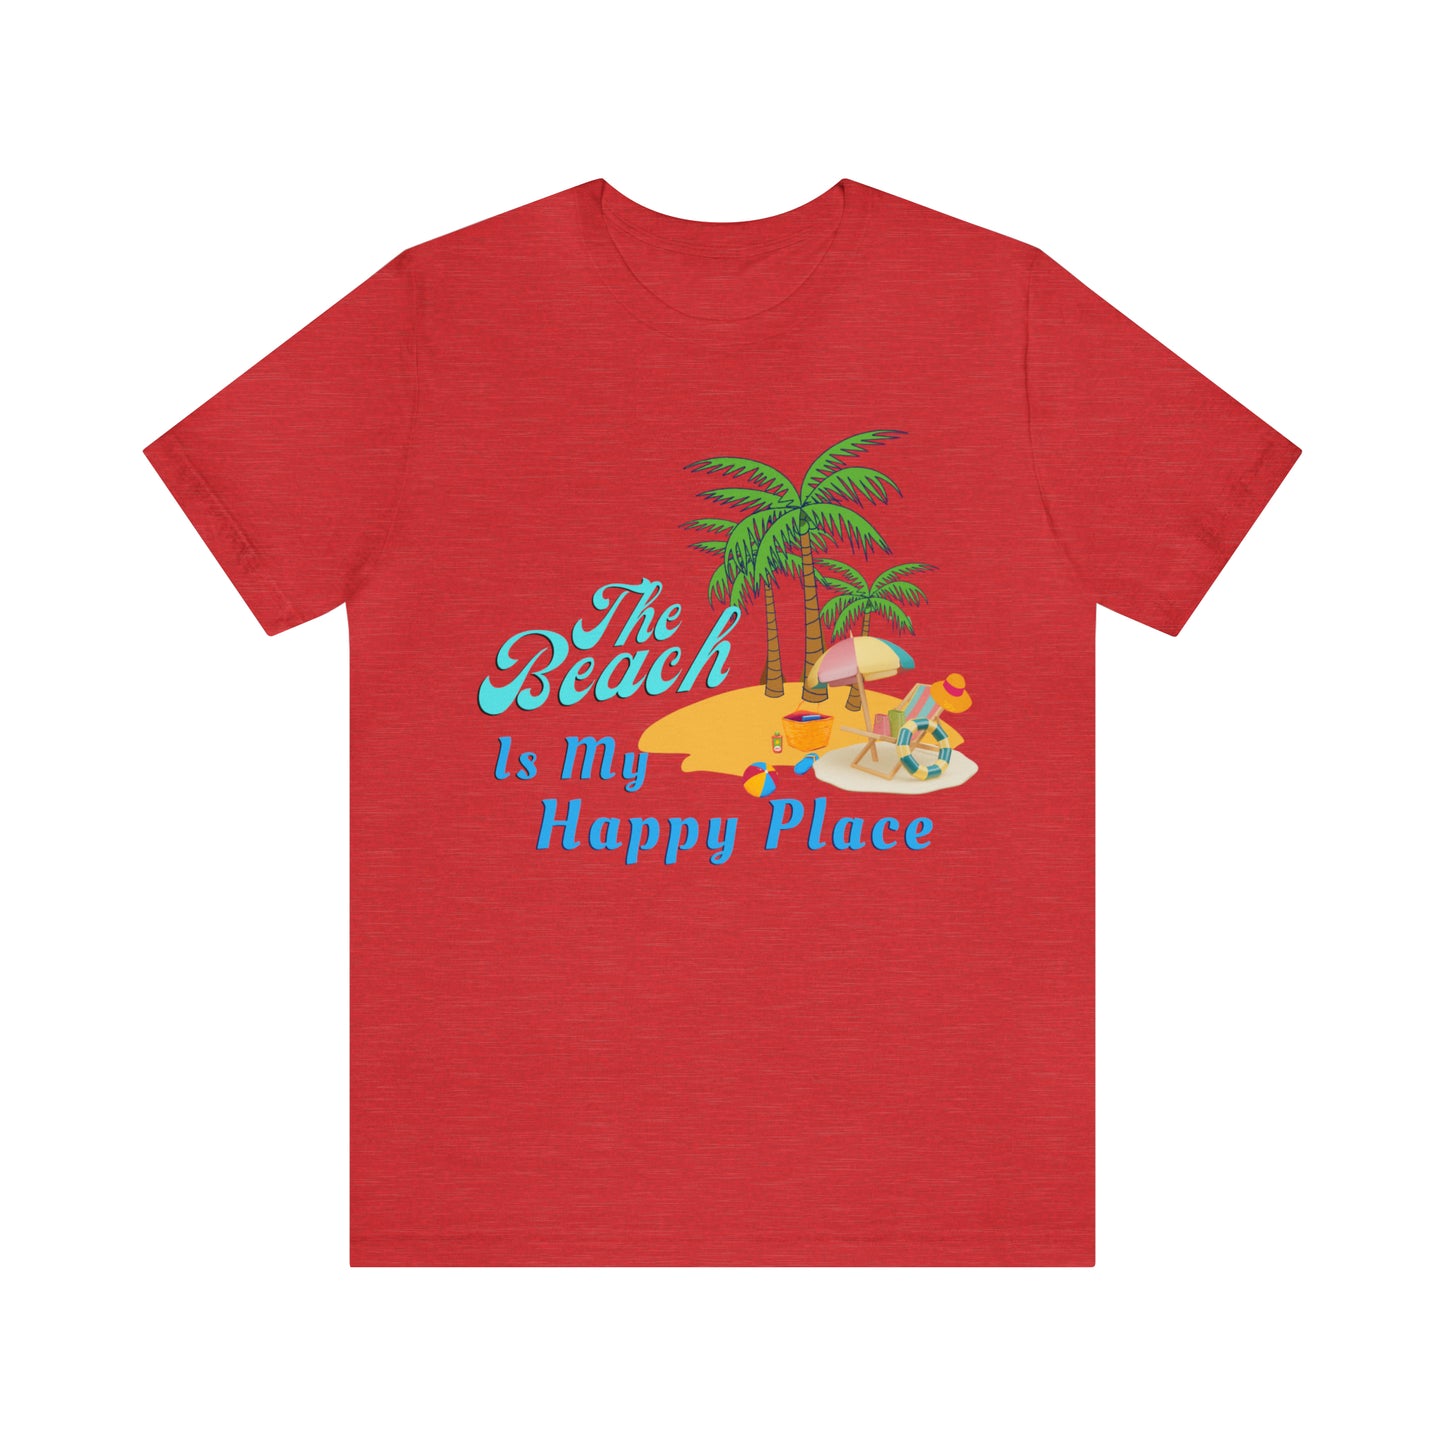 Beach shirt, The Beach is my happy place shirt, Beach t-shirt, Summer shirt, Beachwear, Beach fashion, Stylish beach apparel